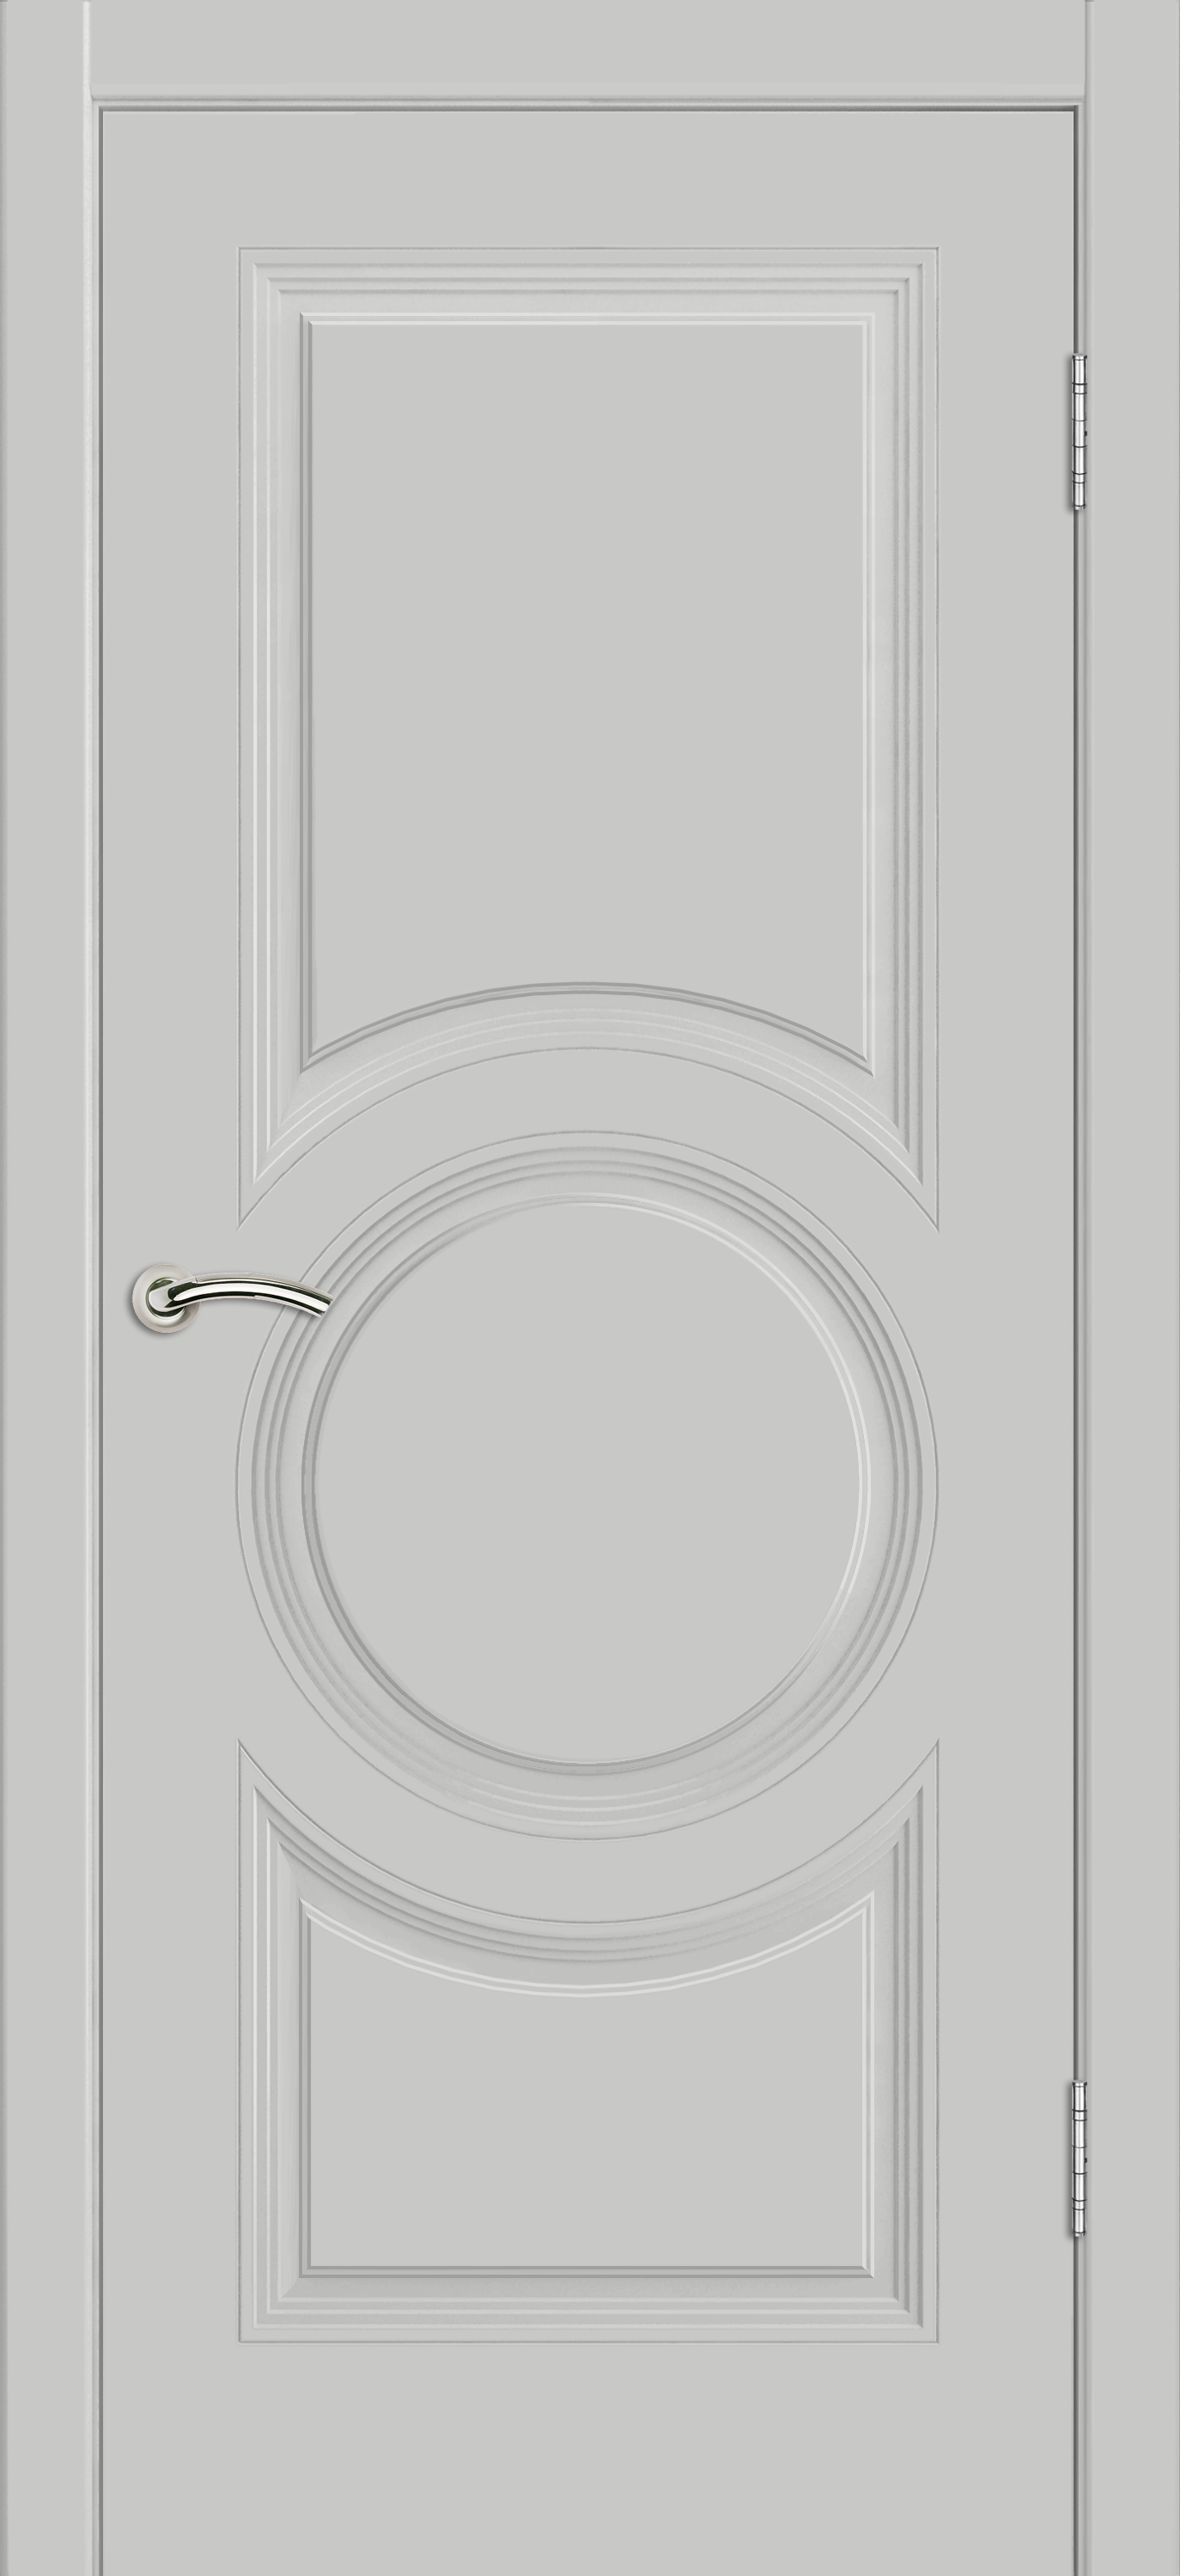 Межкомнатная дверь «Vision 8». Вид отделки Белая эмаль Cтандартный наличник